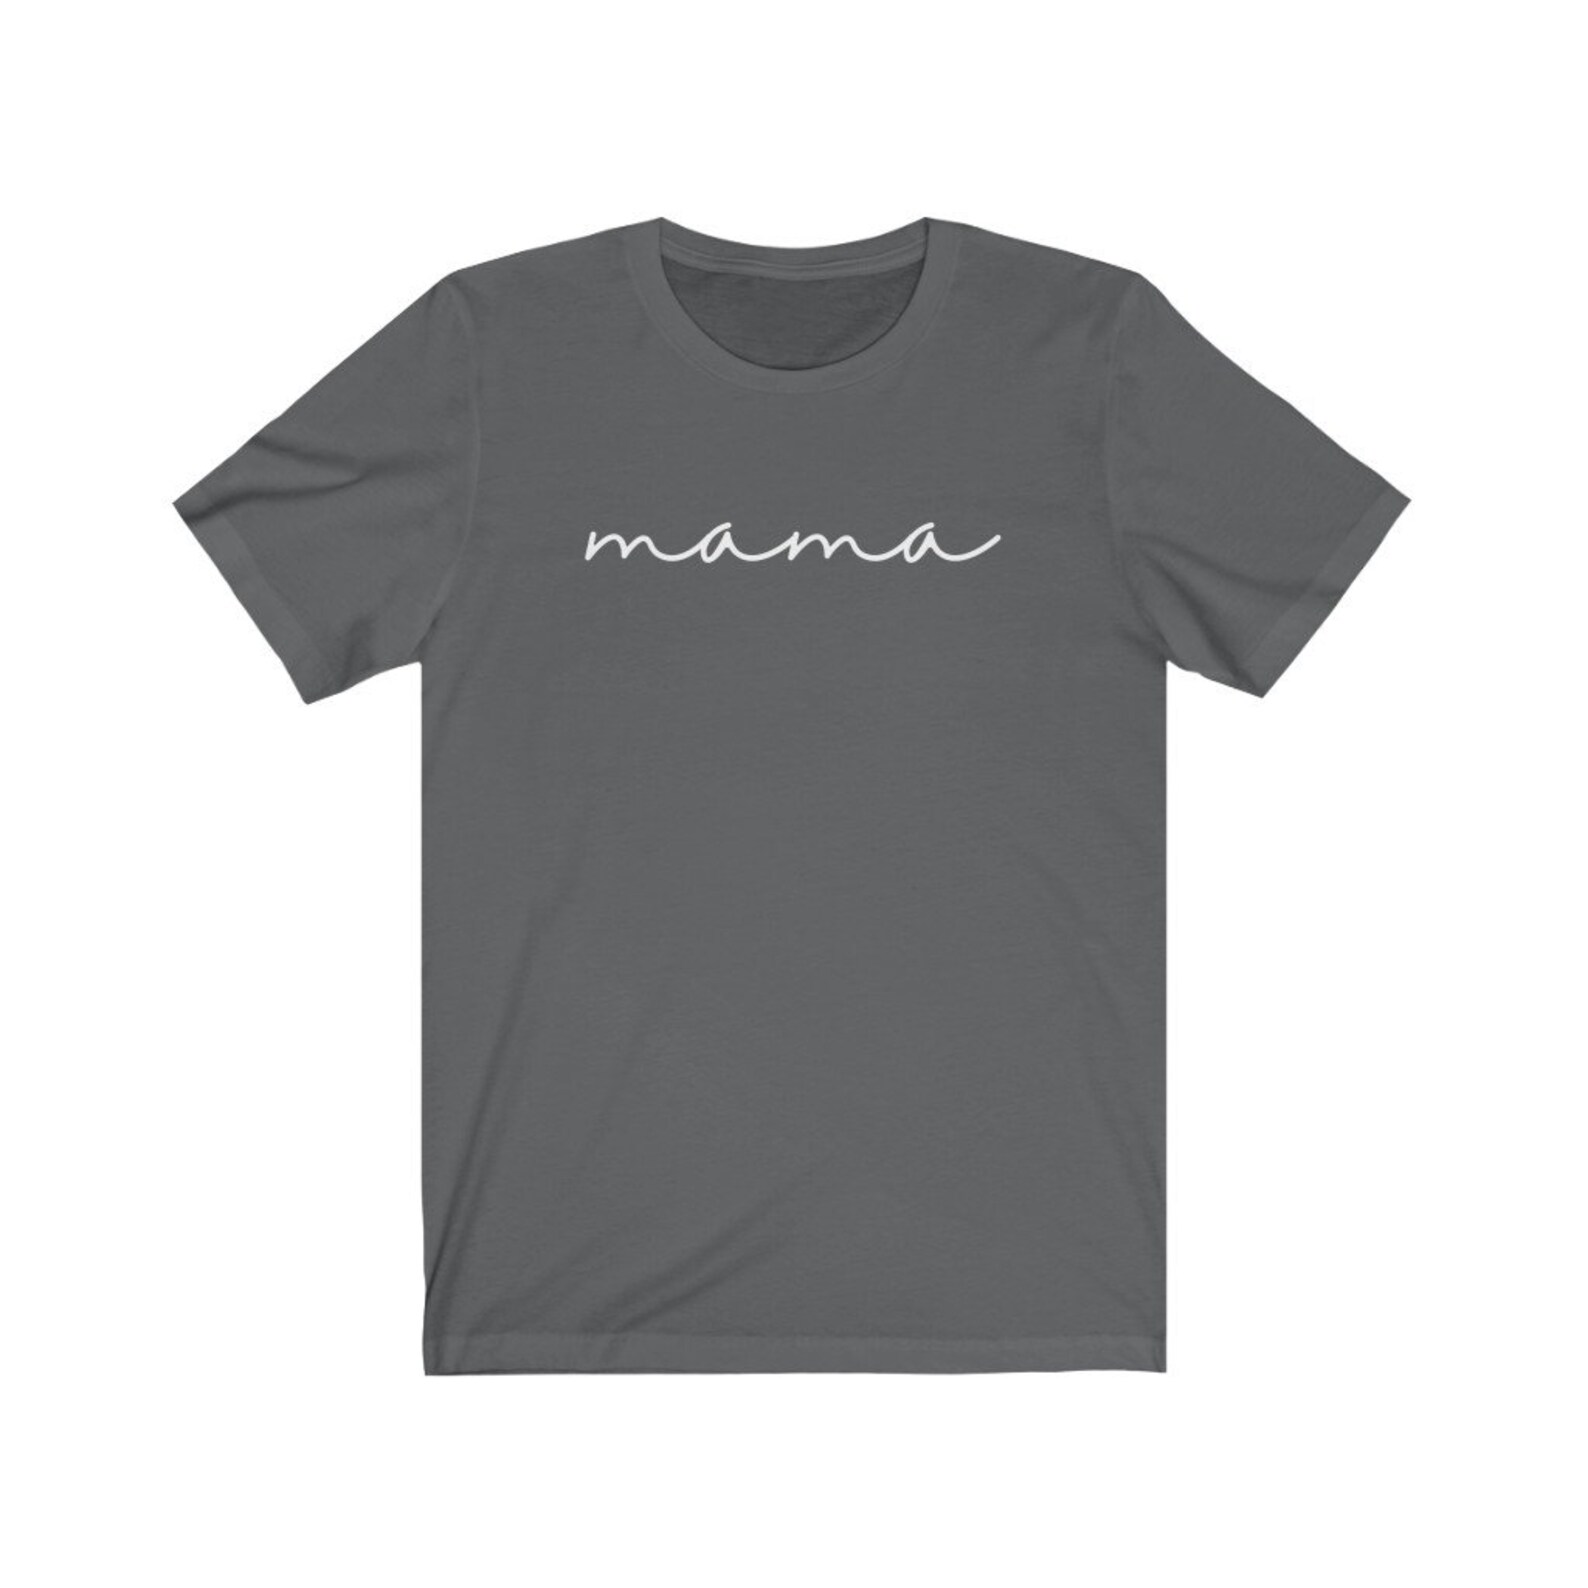 Mama T-shirt/ Mom gift / mommy shirt / mama to be shirt | Etsy